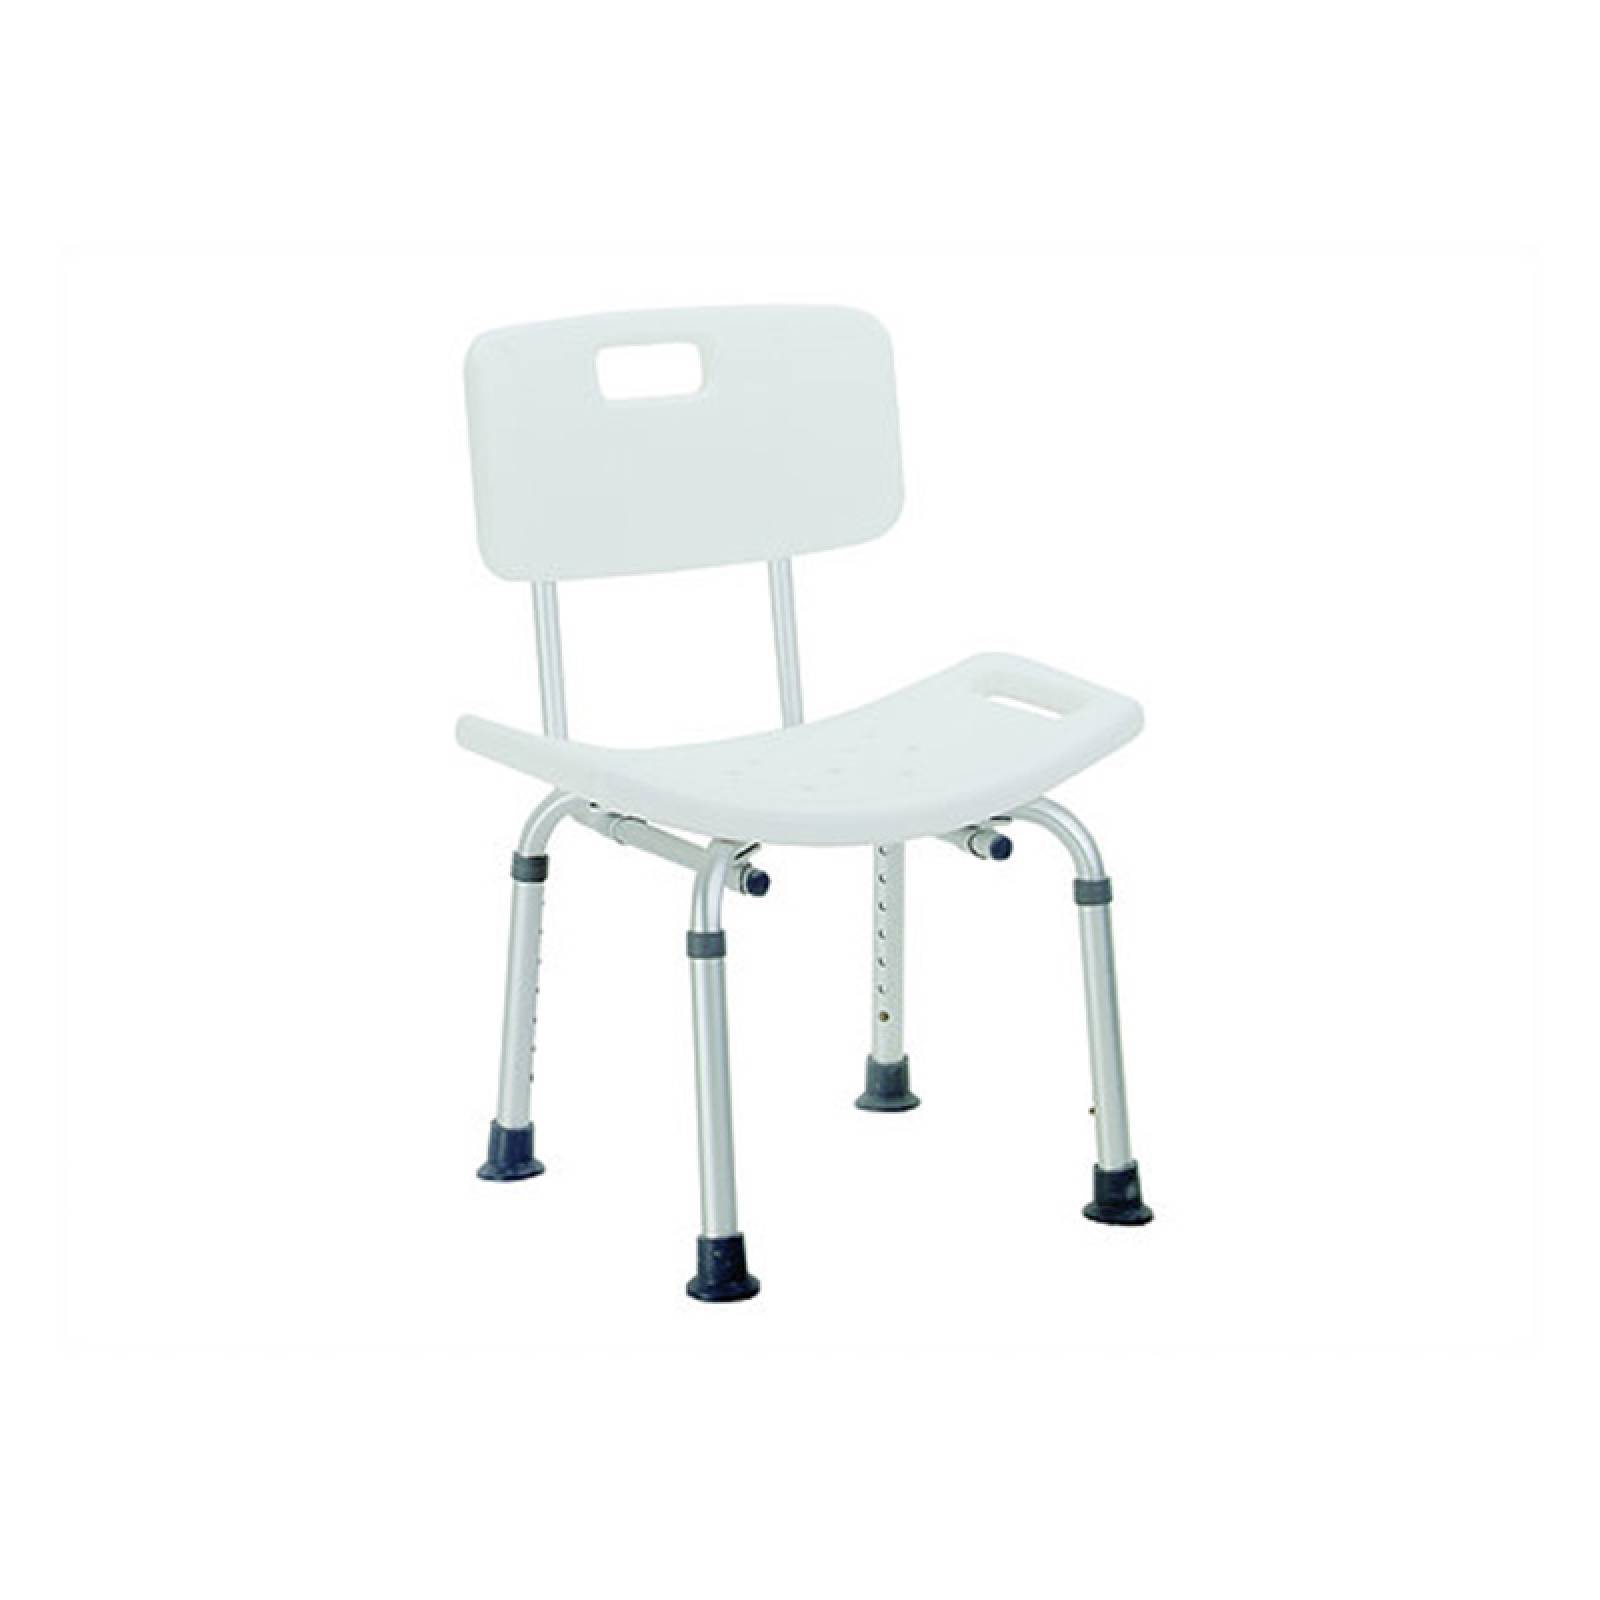 Silla ducha antiderrapante ajustable aluminio orto sillas